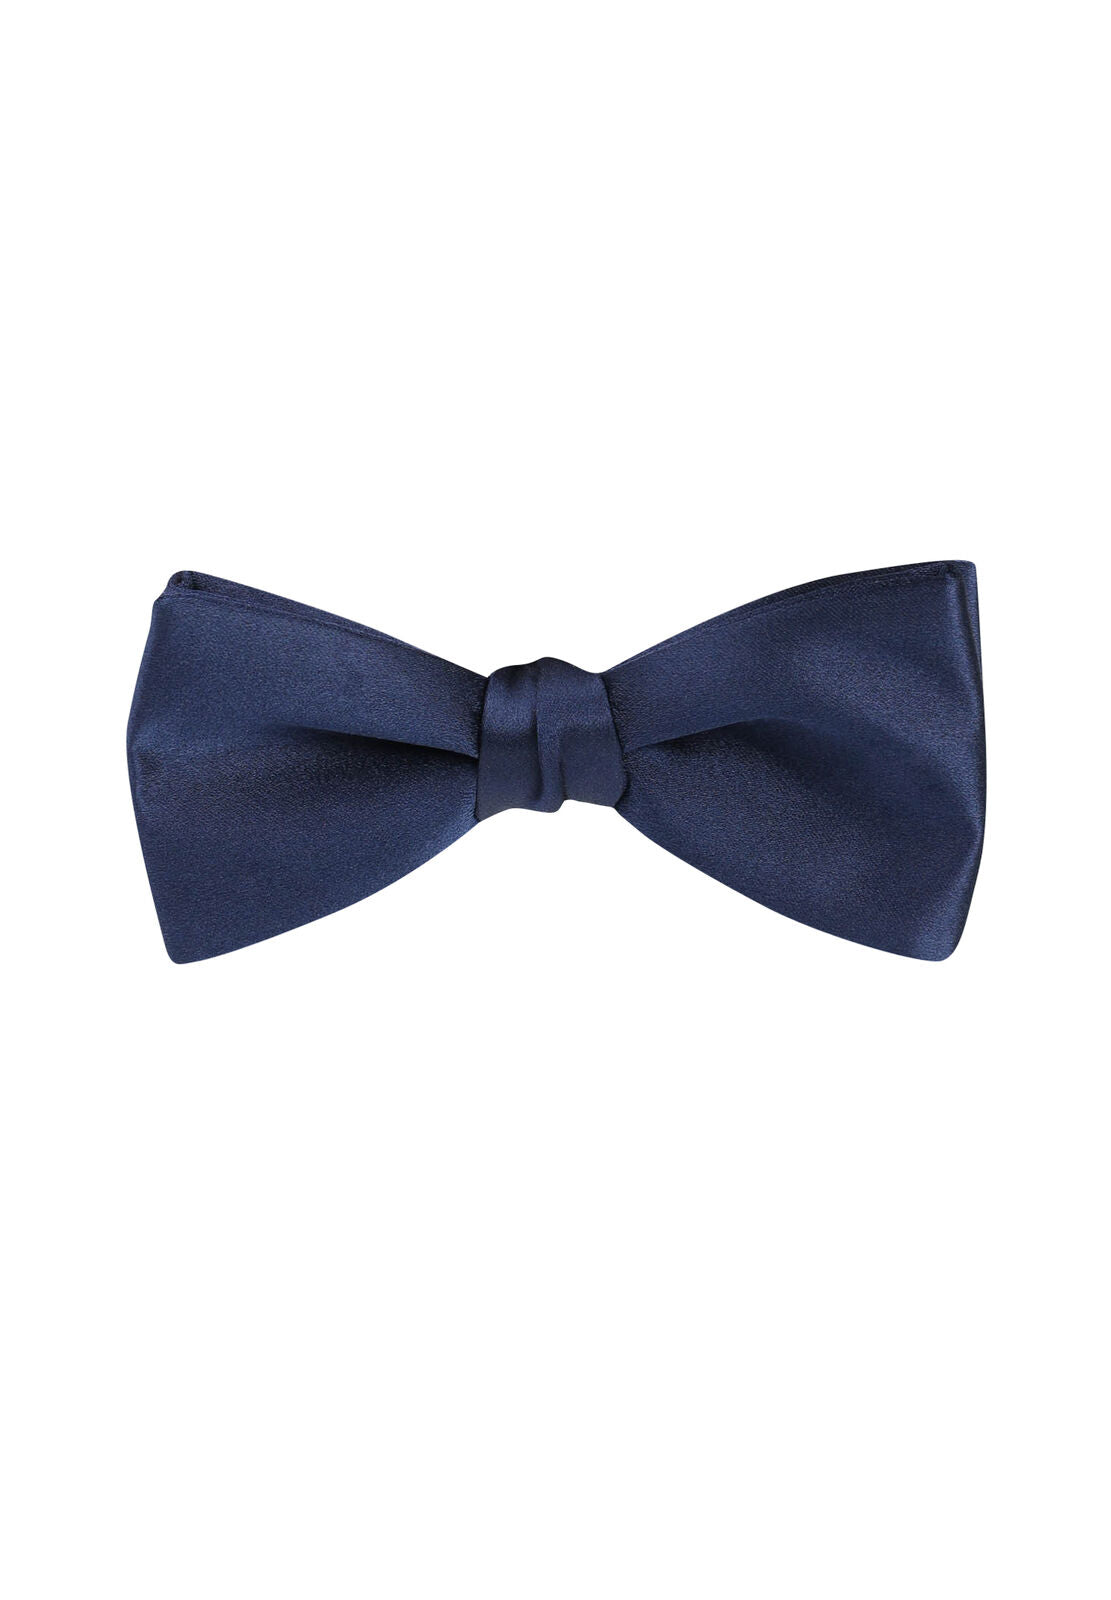 LANVIN Silk Bow-Tie, Navy